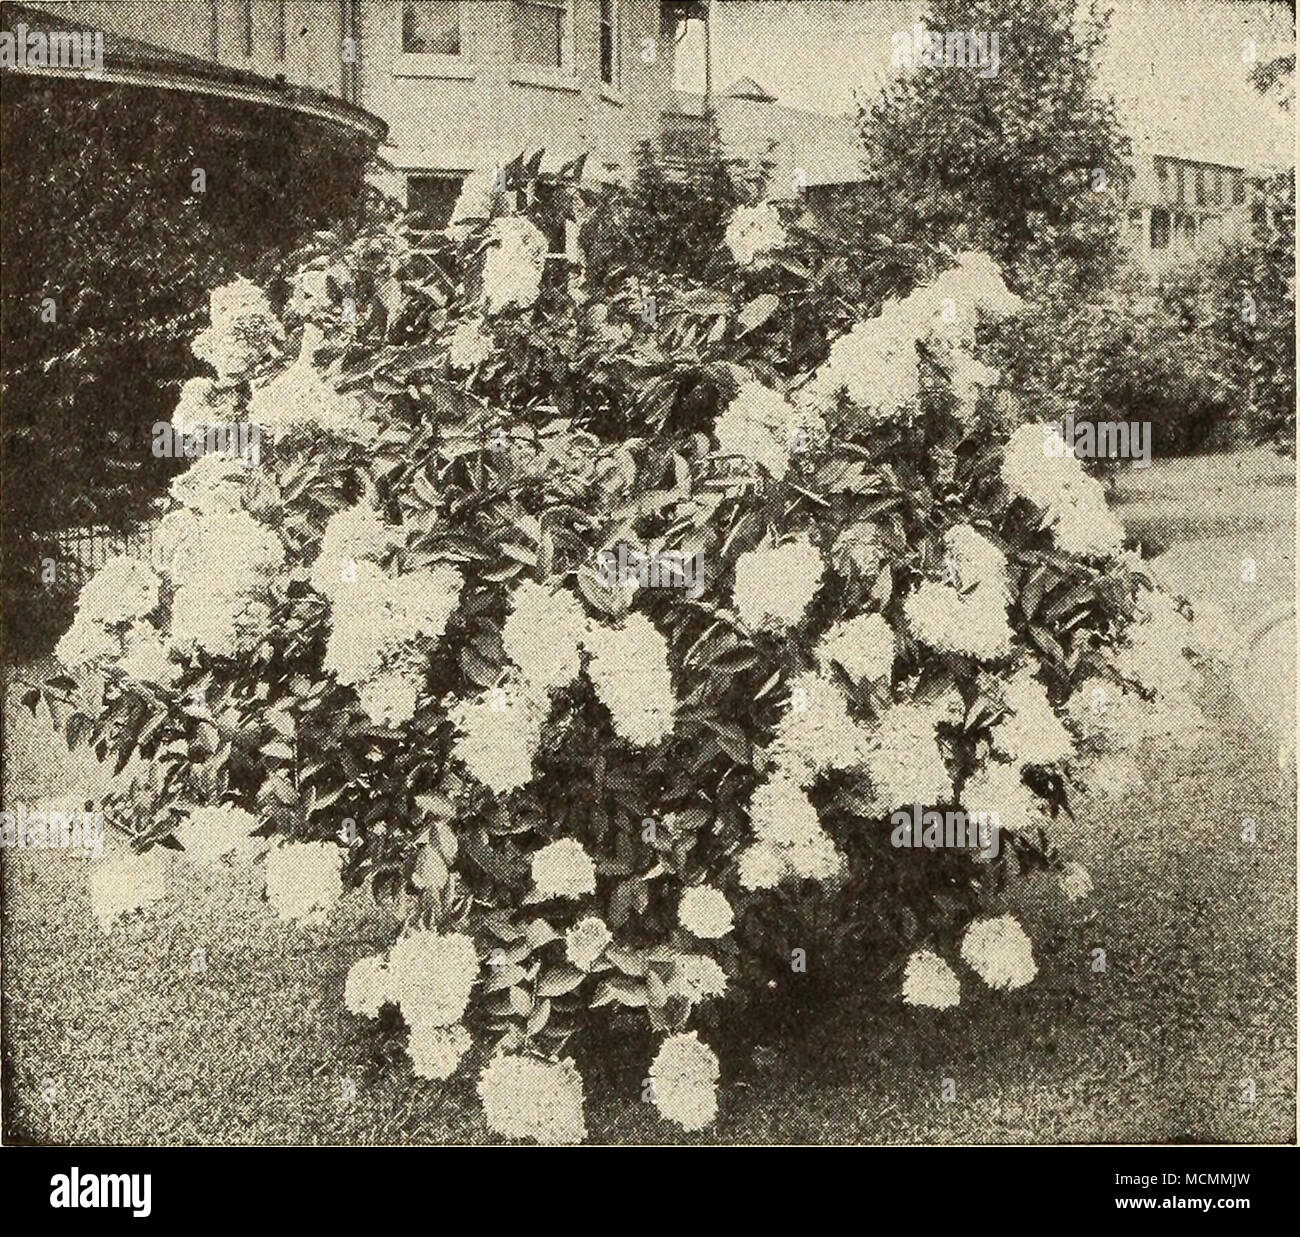 Hydrangea Paniculata Grandiflora migliori e più di ornamentali tutti Hardy  arbusti. Le Ortensie sono ampiamente utilizzati per il cantiere, la.wn e  hedge semina e per gli schermi. Raggiunge un altezza di